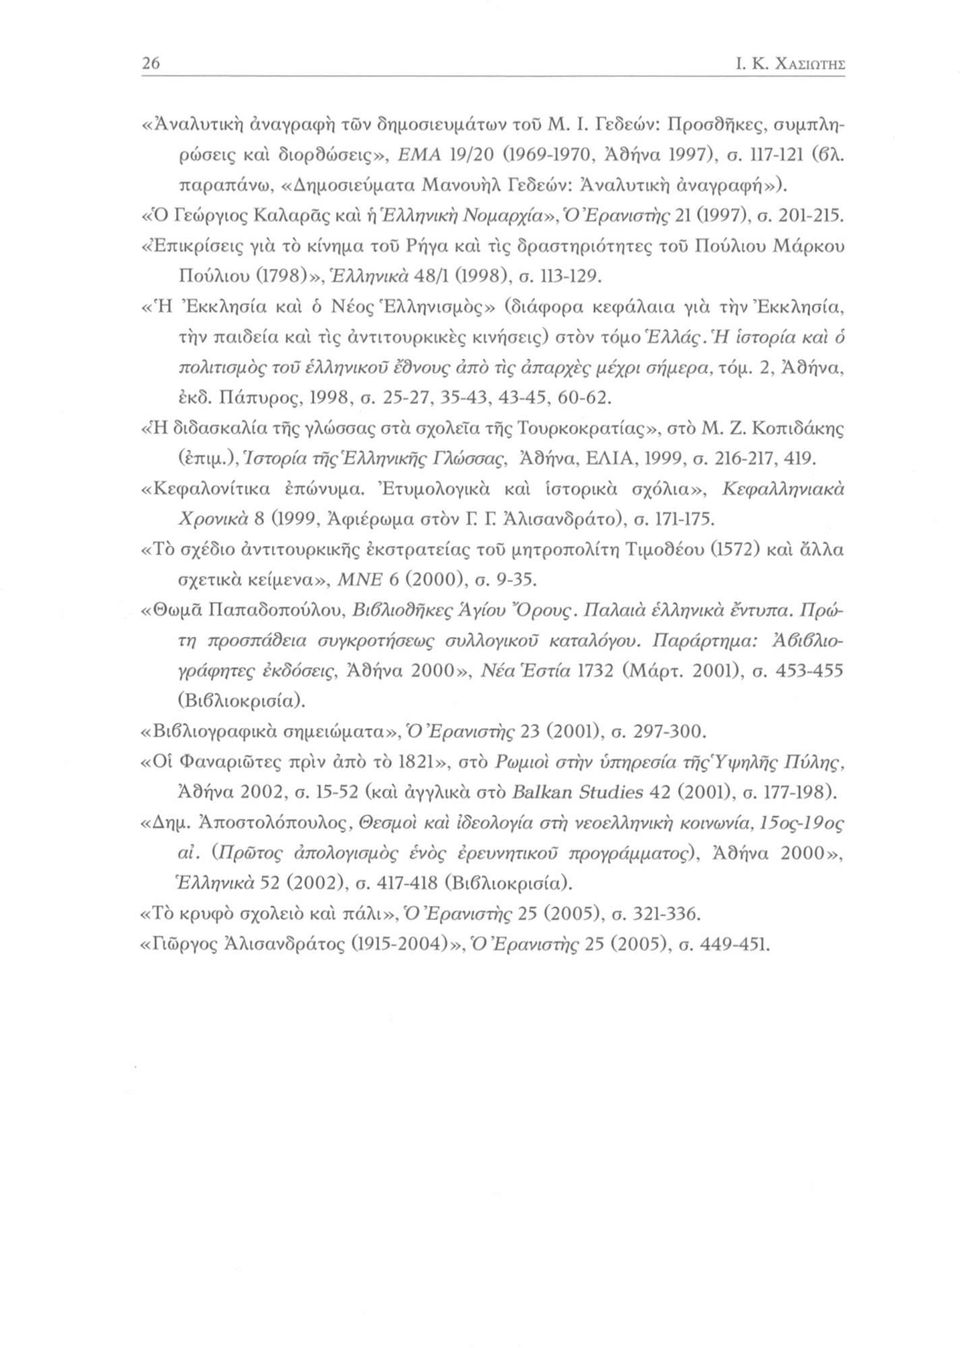 «Επικρίσεις για το κίνημα τοΰ Ρήγα κα'ι τις δραστηριότητες του Πούλιου Μάρκου Πούλιου (1798)», 'Ελληνικά 48/1 (1998), σ. 113-129.